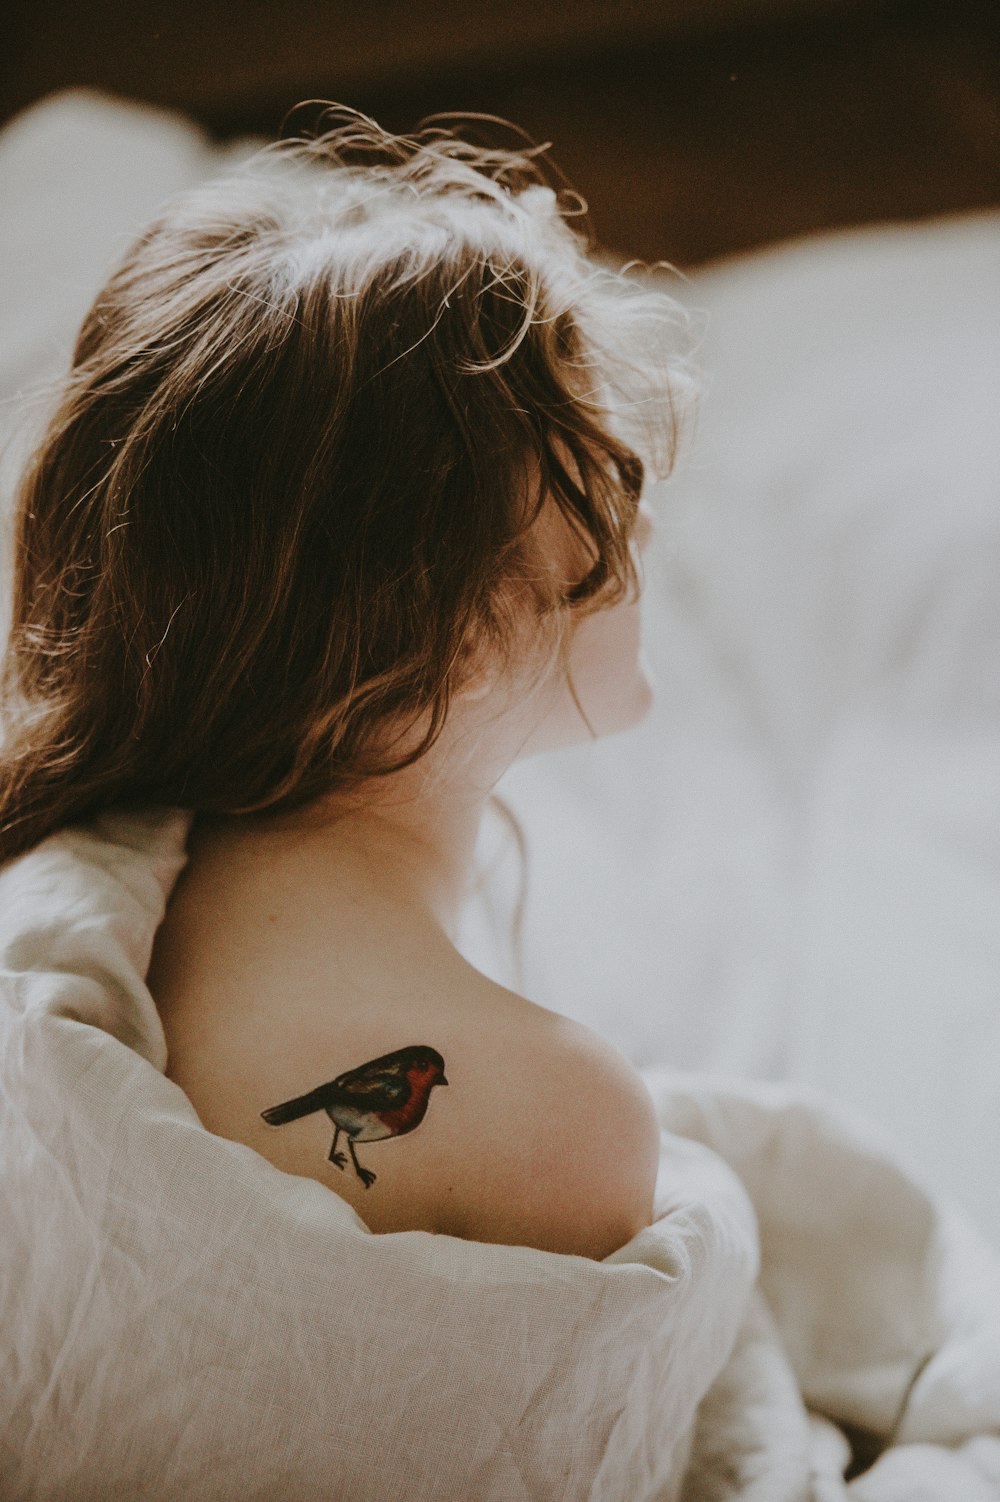 Mujer con tatuaje de pájaro en el hombro que yace sobre superficie blanca